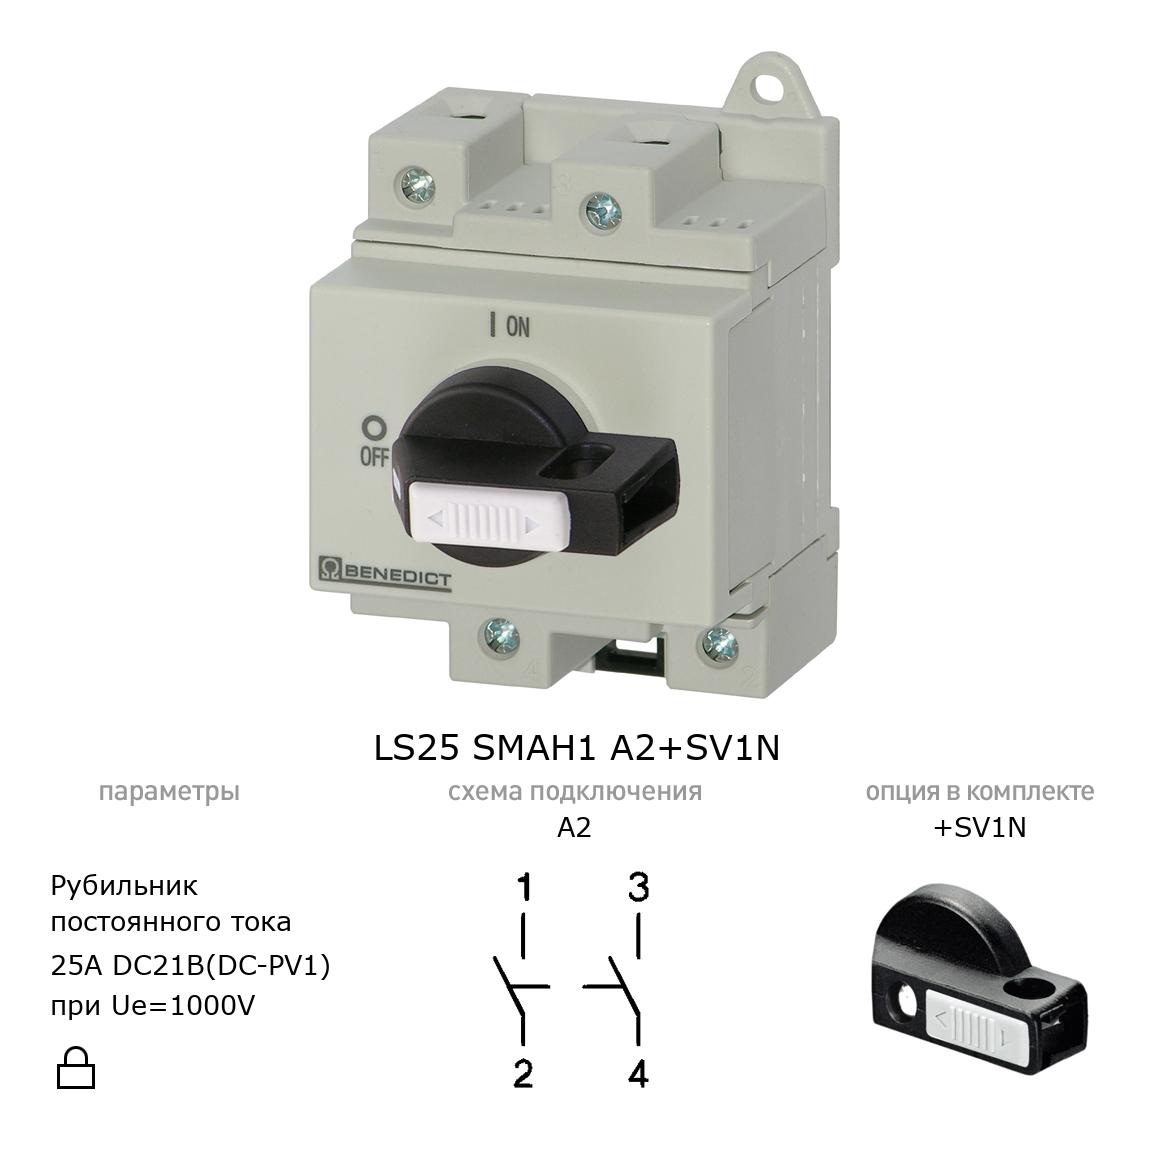 Выключатель нагрузки / рубильник для постоянного тока (DC) LS25 SMAH1 A2+SV1N BENEDICT